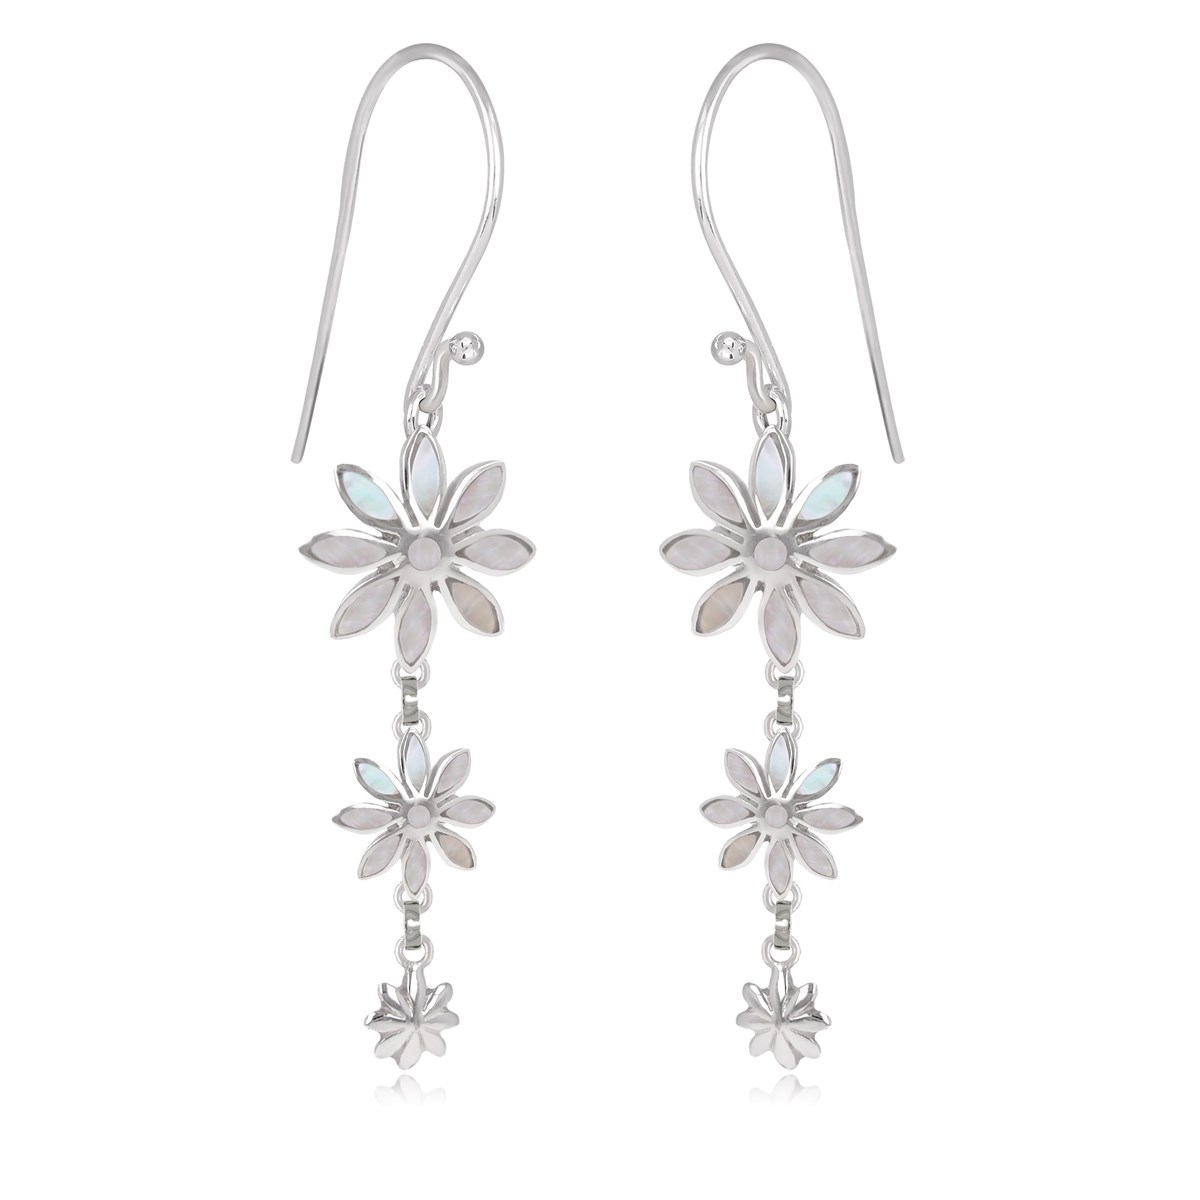 Pendants d'oreilles nacre blanche 3 fleurs en argent 925 rhodié : un bijou élégant et raffiné | Aden Boutique